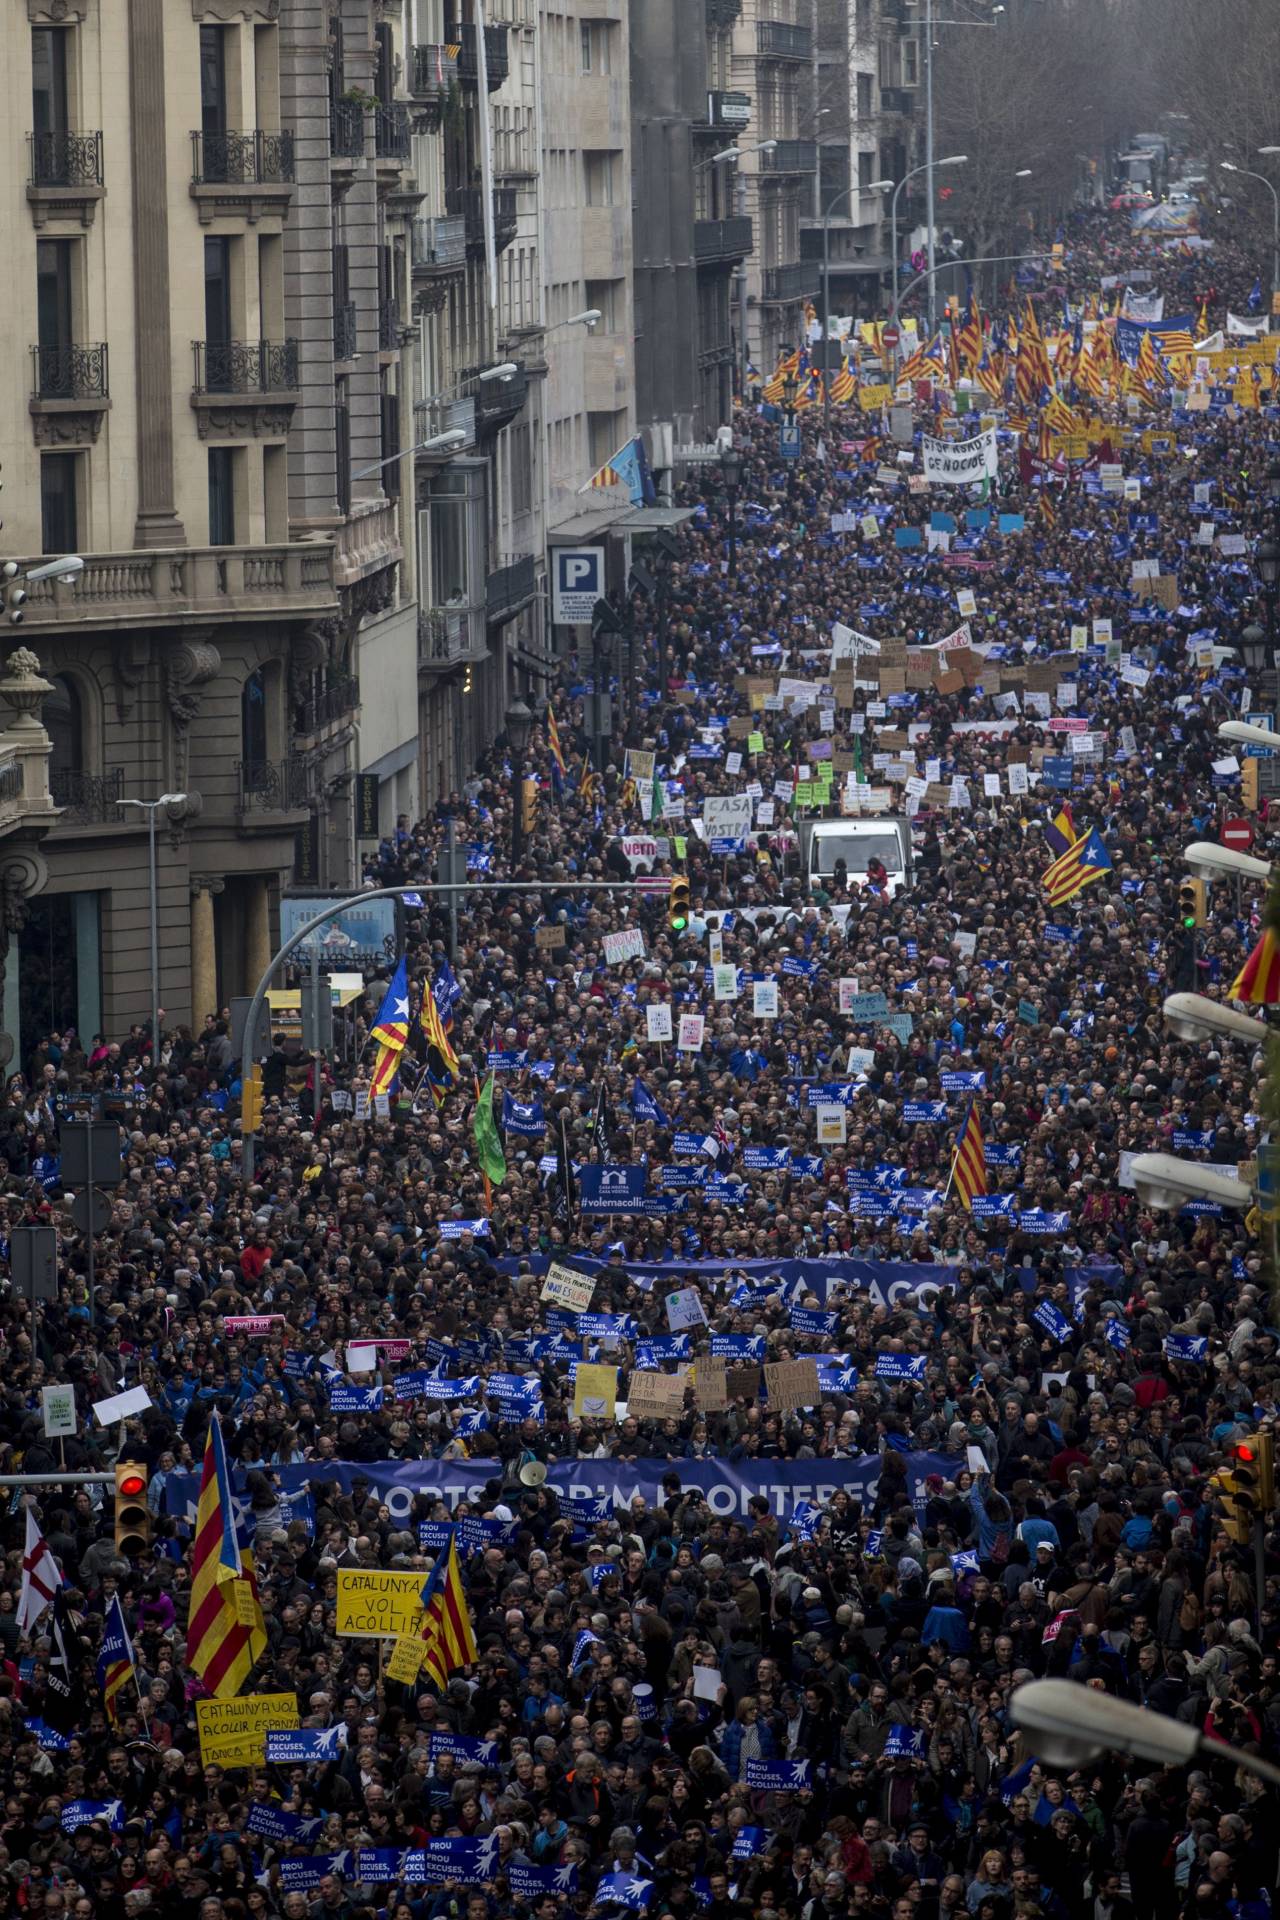 Vista de la manifestación celebrada hoy en Barcelona por los refugiados bajo el lema "Basta de excusas. Acojamos ya".